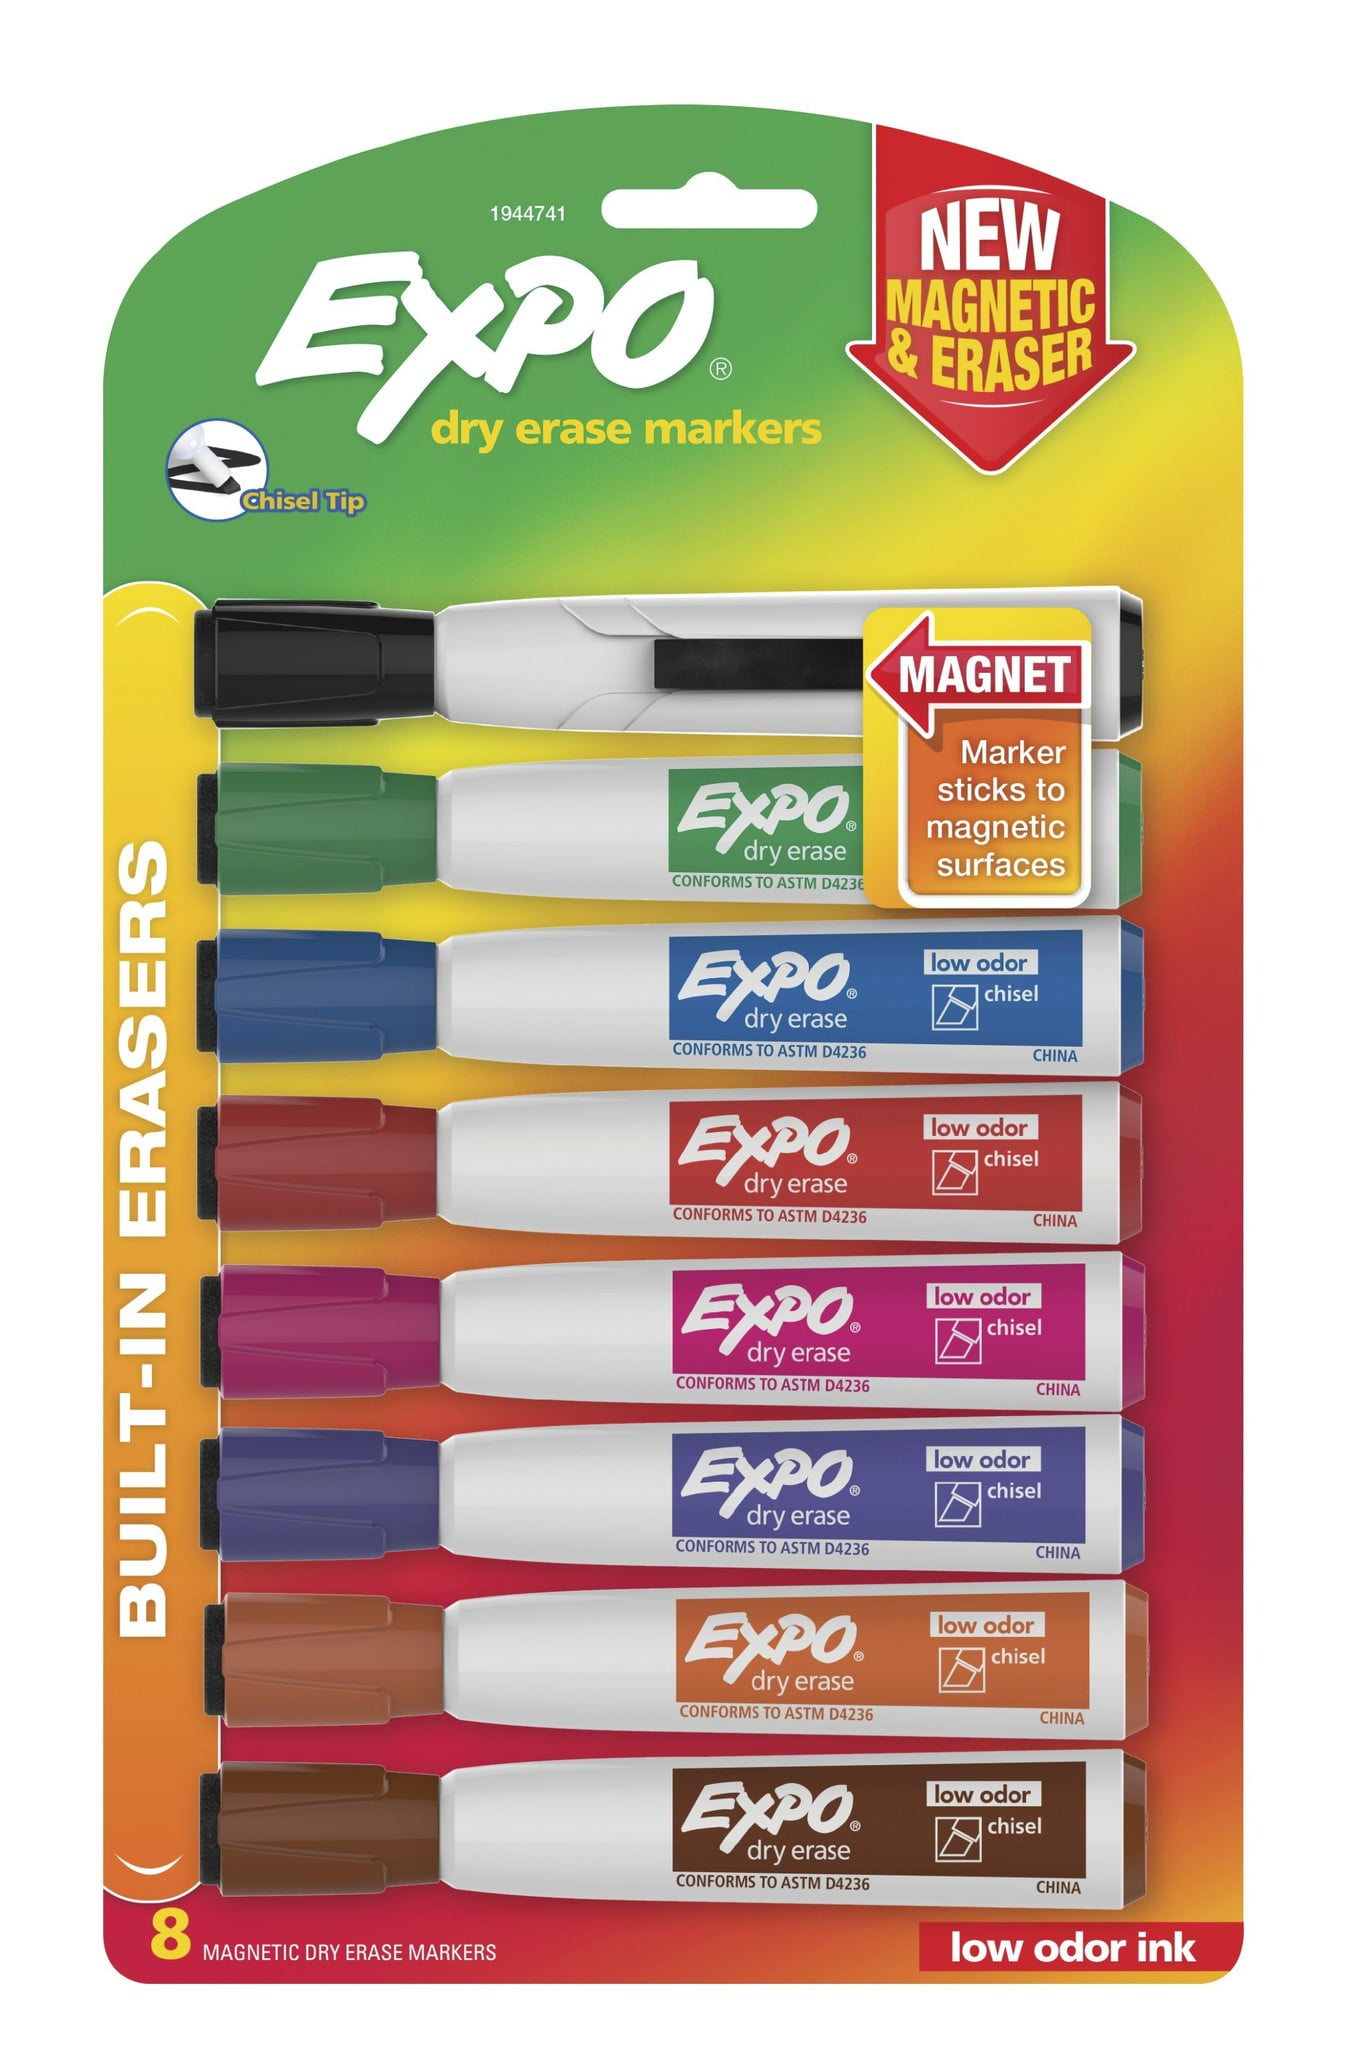  NiArt Whiteboard Magnetic Dry Erase Marker Holder Set